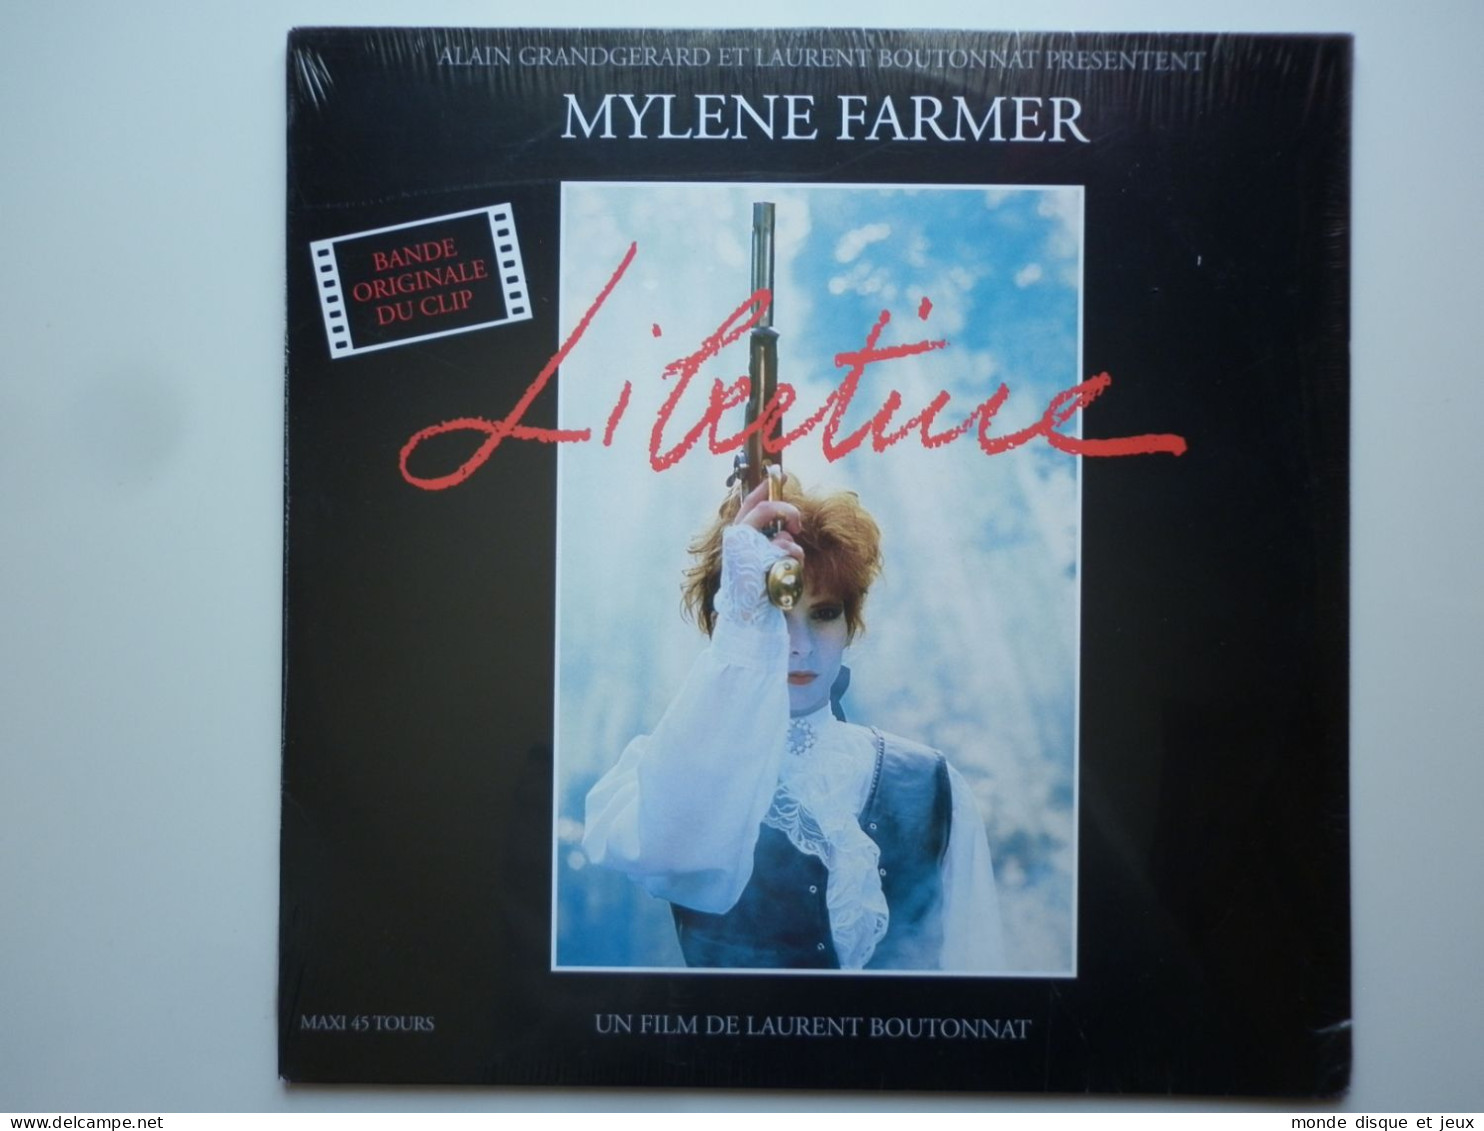 Mylene Farmer Maxi 45Tours Vinyle Libertine Bande Original Du Clip Exclusivité Couleur Rouge - 45 Rpm - Maxi-Singles